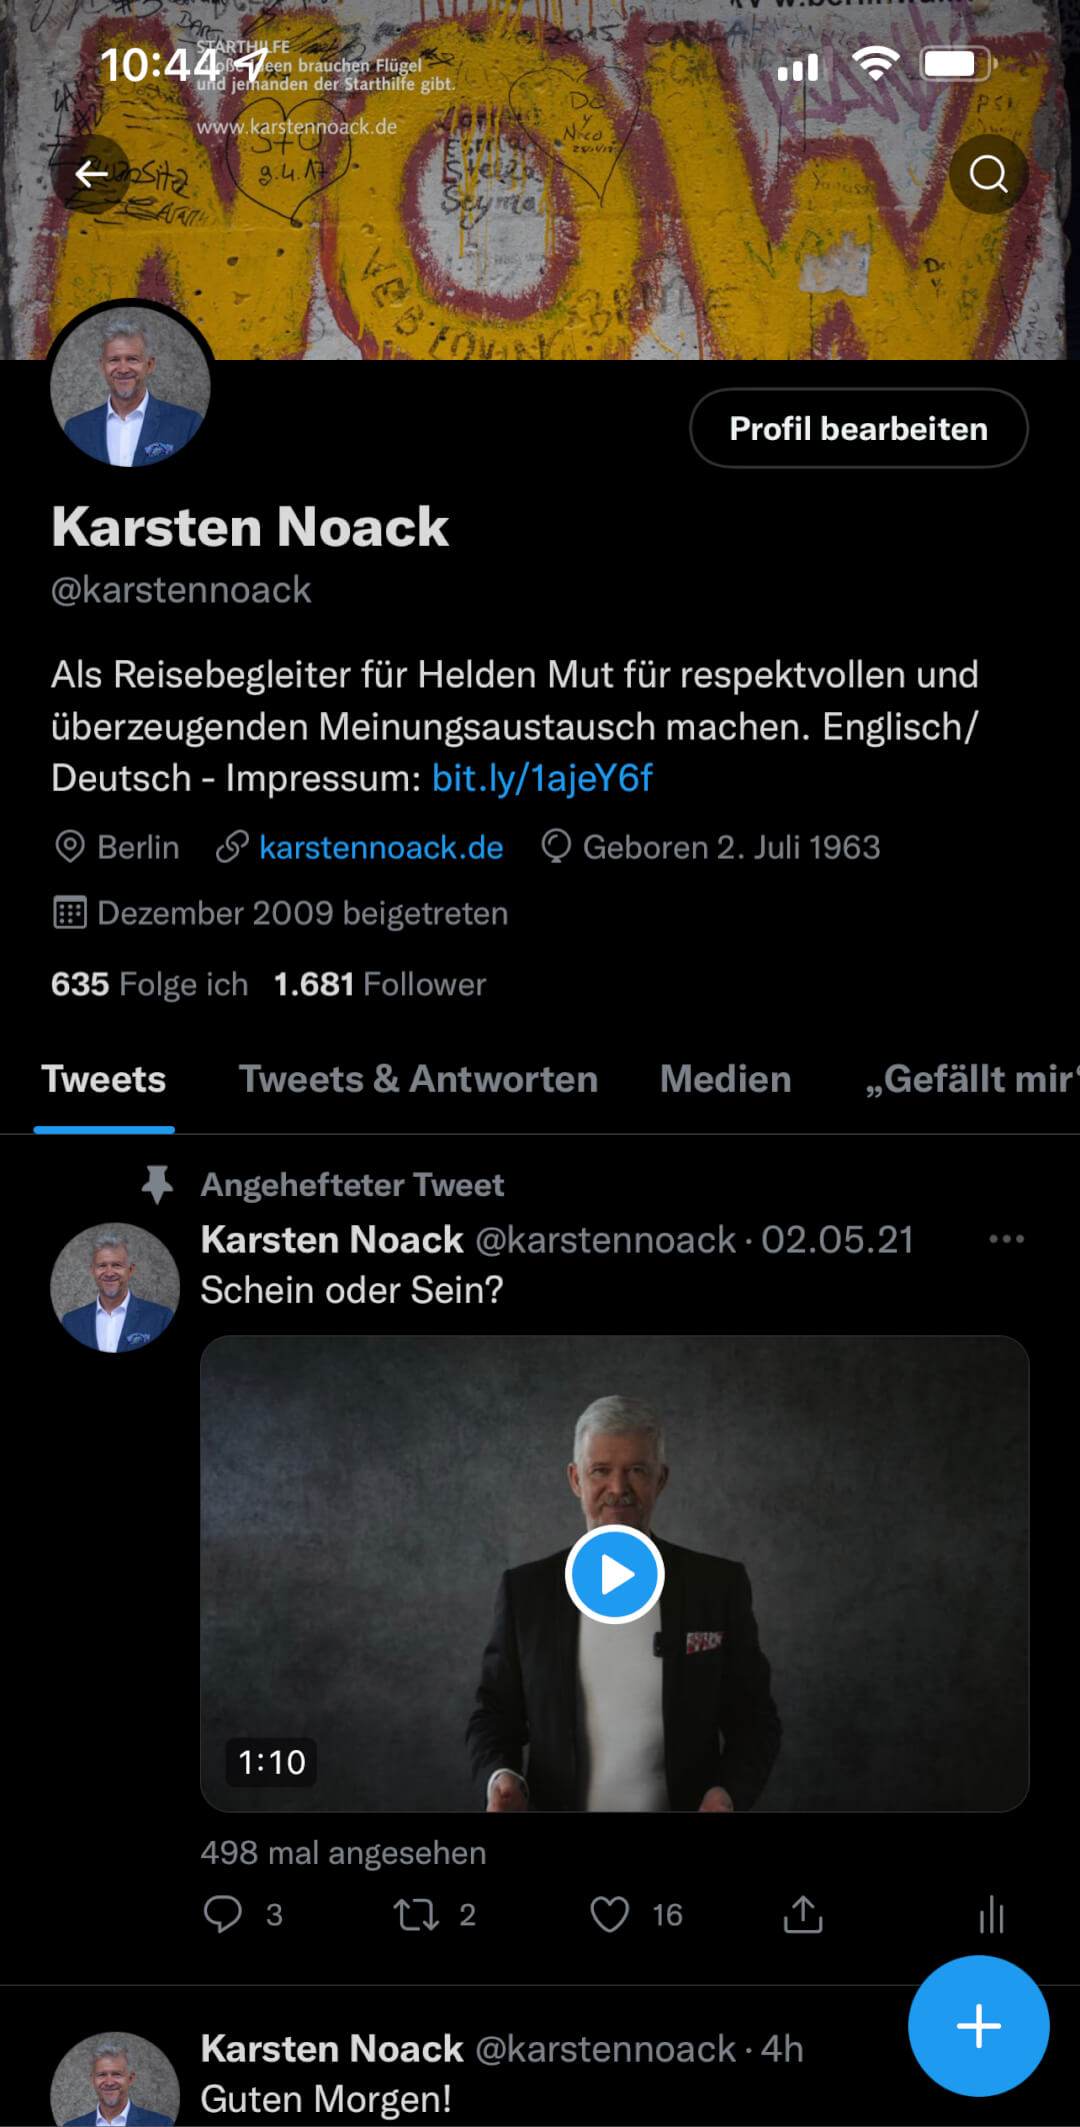 Twitter @karstennoack